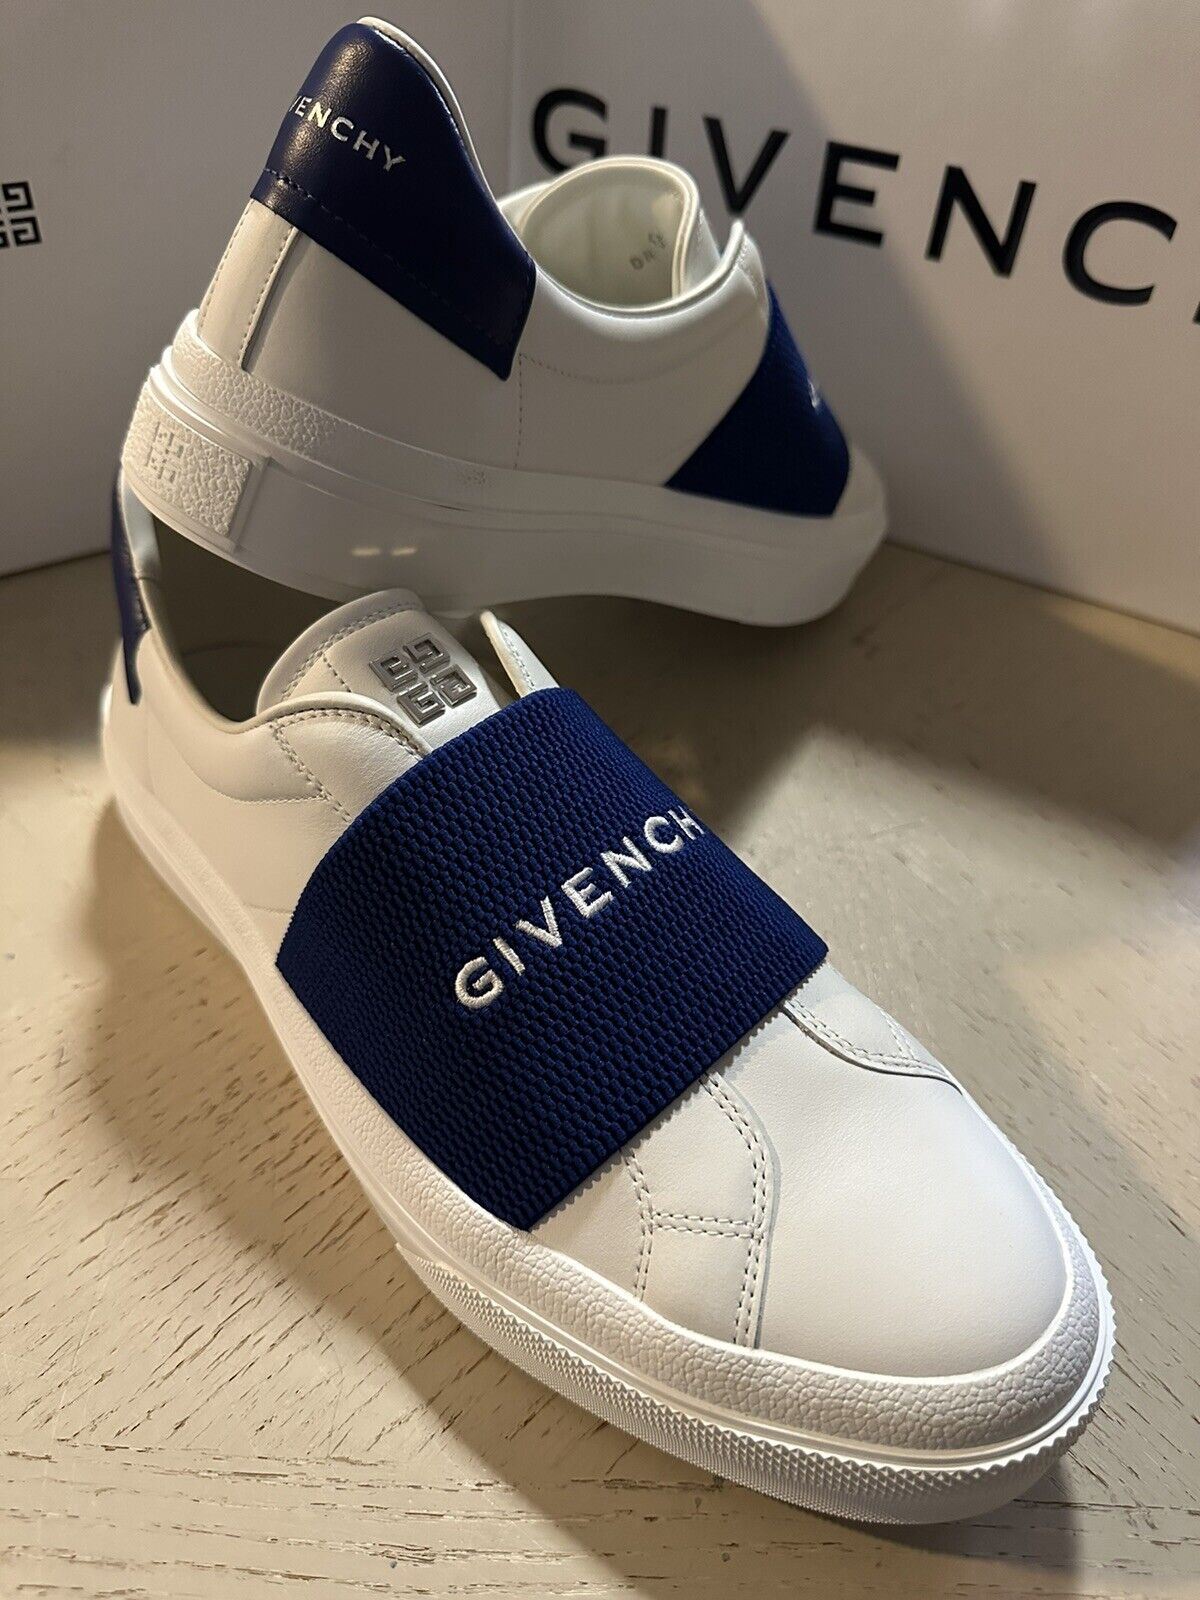 NIB Givenchy Мужские эластичные кожаные кроссовки City Sport белого/синего цвета 10 США/43 ЕС